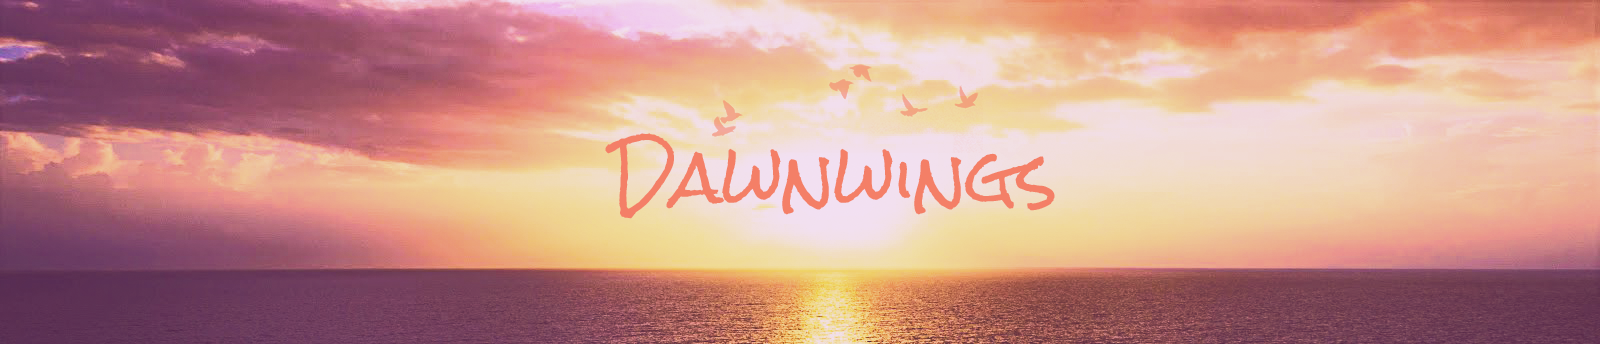 Dawnwings